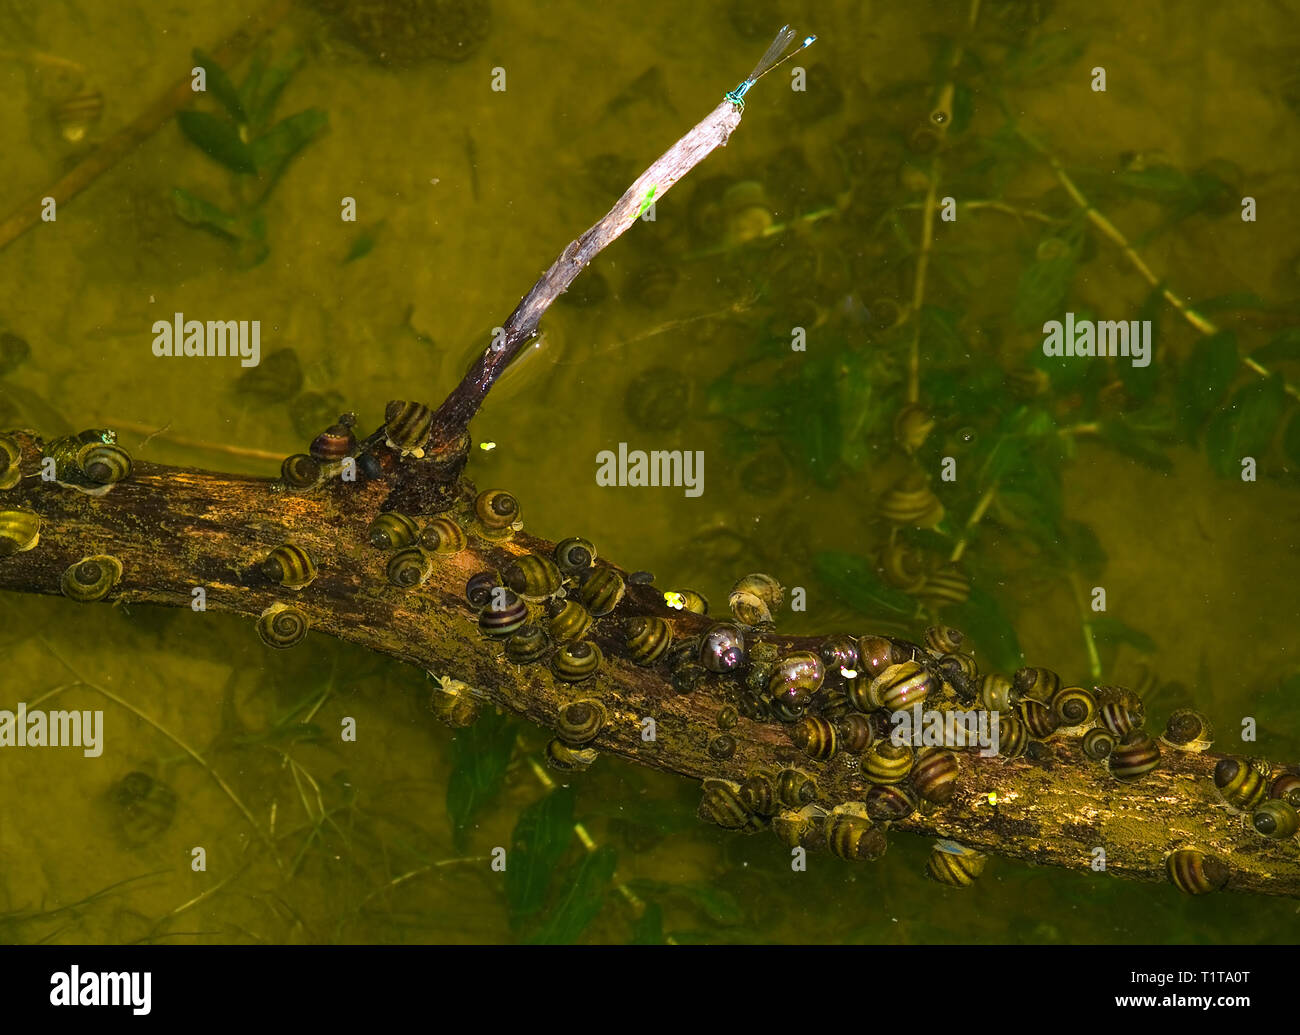 Groupe d'escargots d'eau douce d'Kruzhank Valvata piscinalis sur la branche flottant dans la rivière. L'Europe. L'Ukraine. La région de Poltava. format horizontal. Banque D'Images